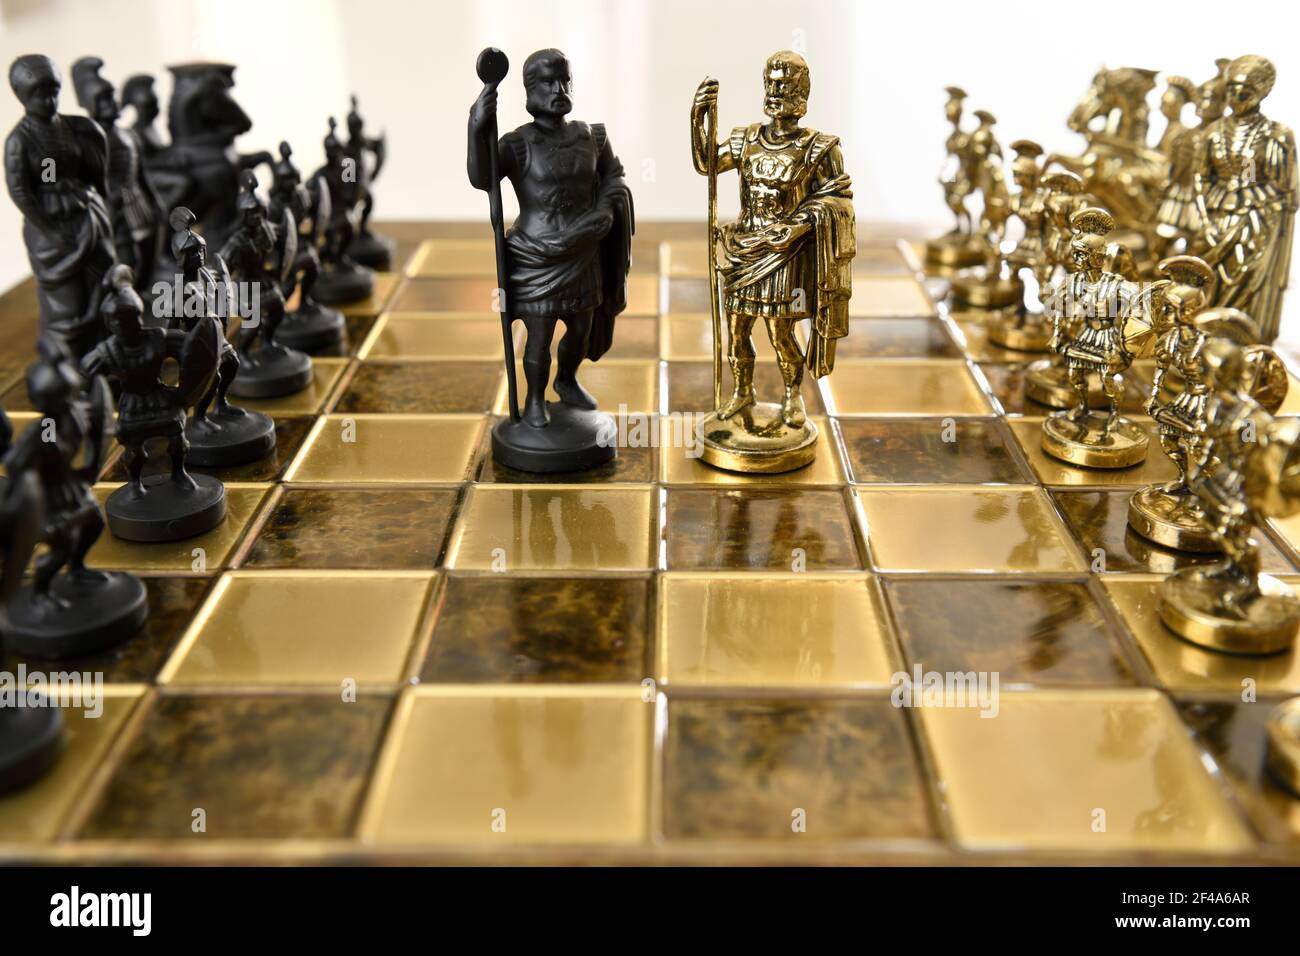 Nero e oro metallo imperatore romano re statuette di scacchi da gli eserciti opposti sulla scacchiera pronti per la battaglia Foto Stock